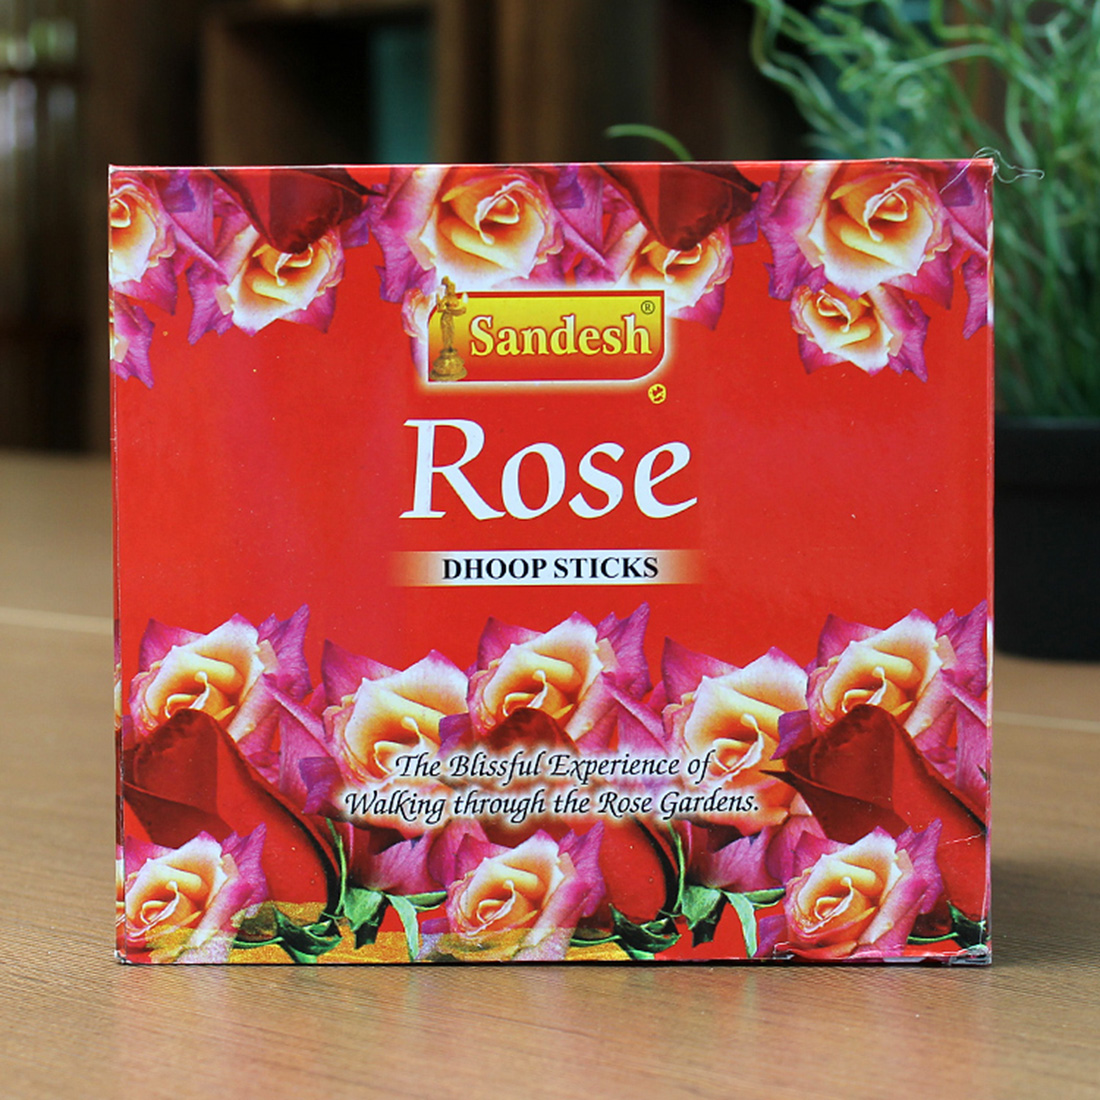 1:rose scent